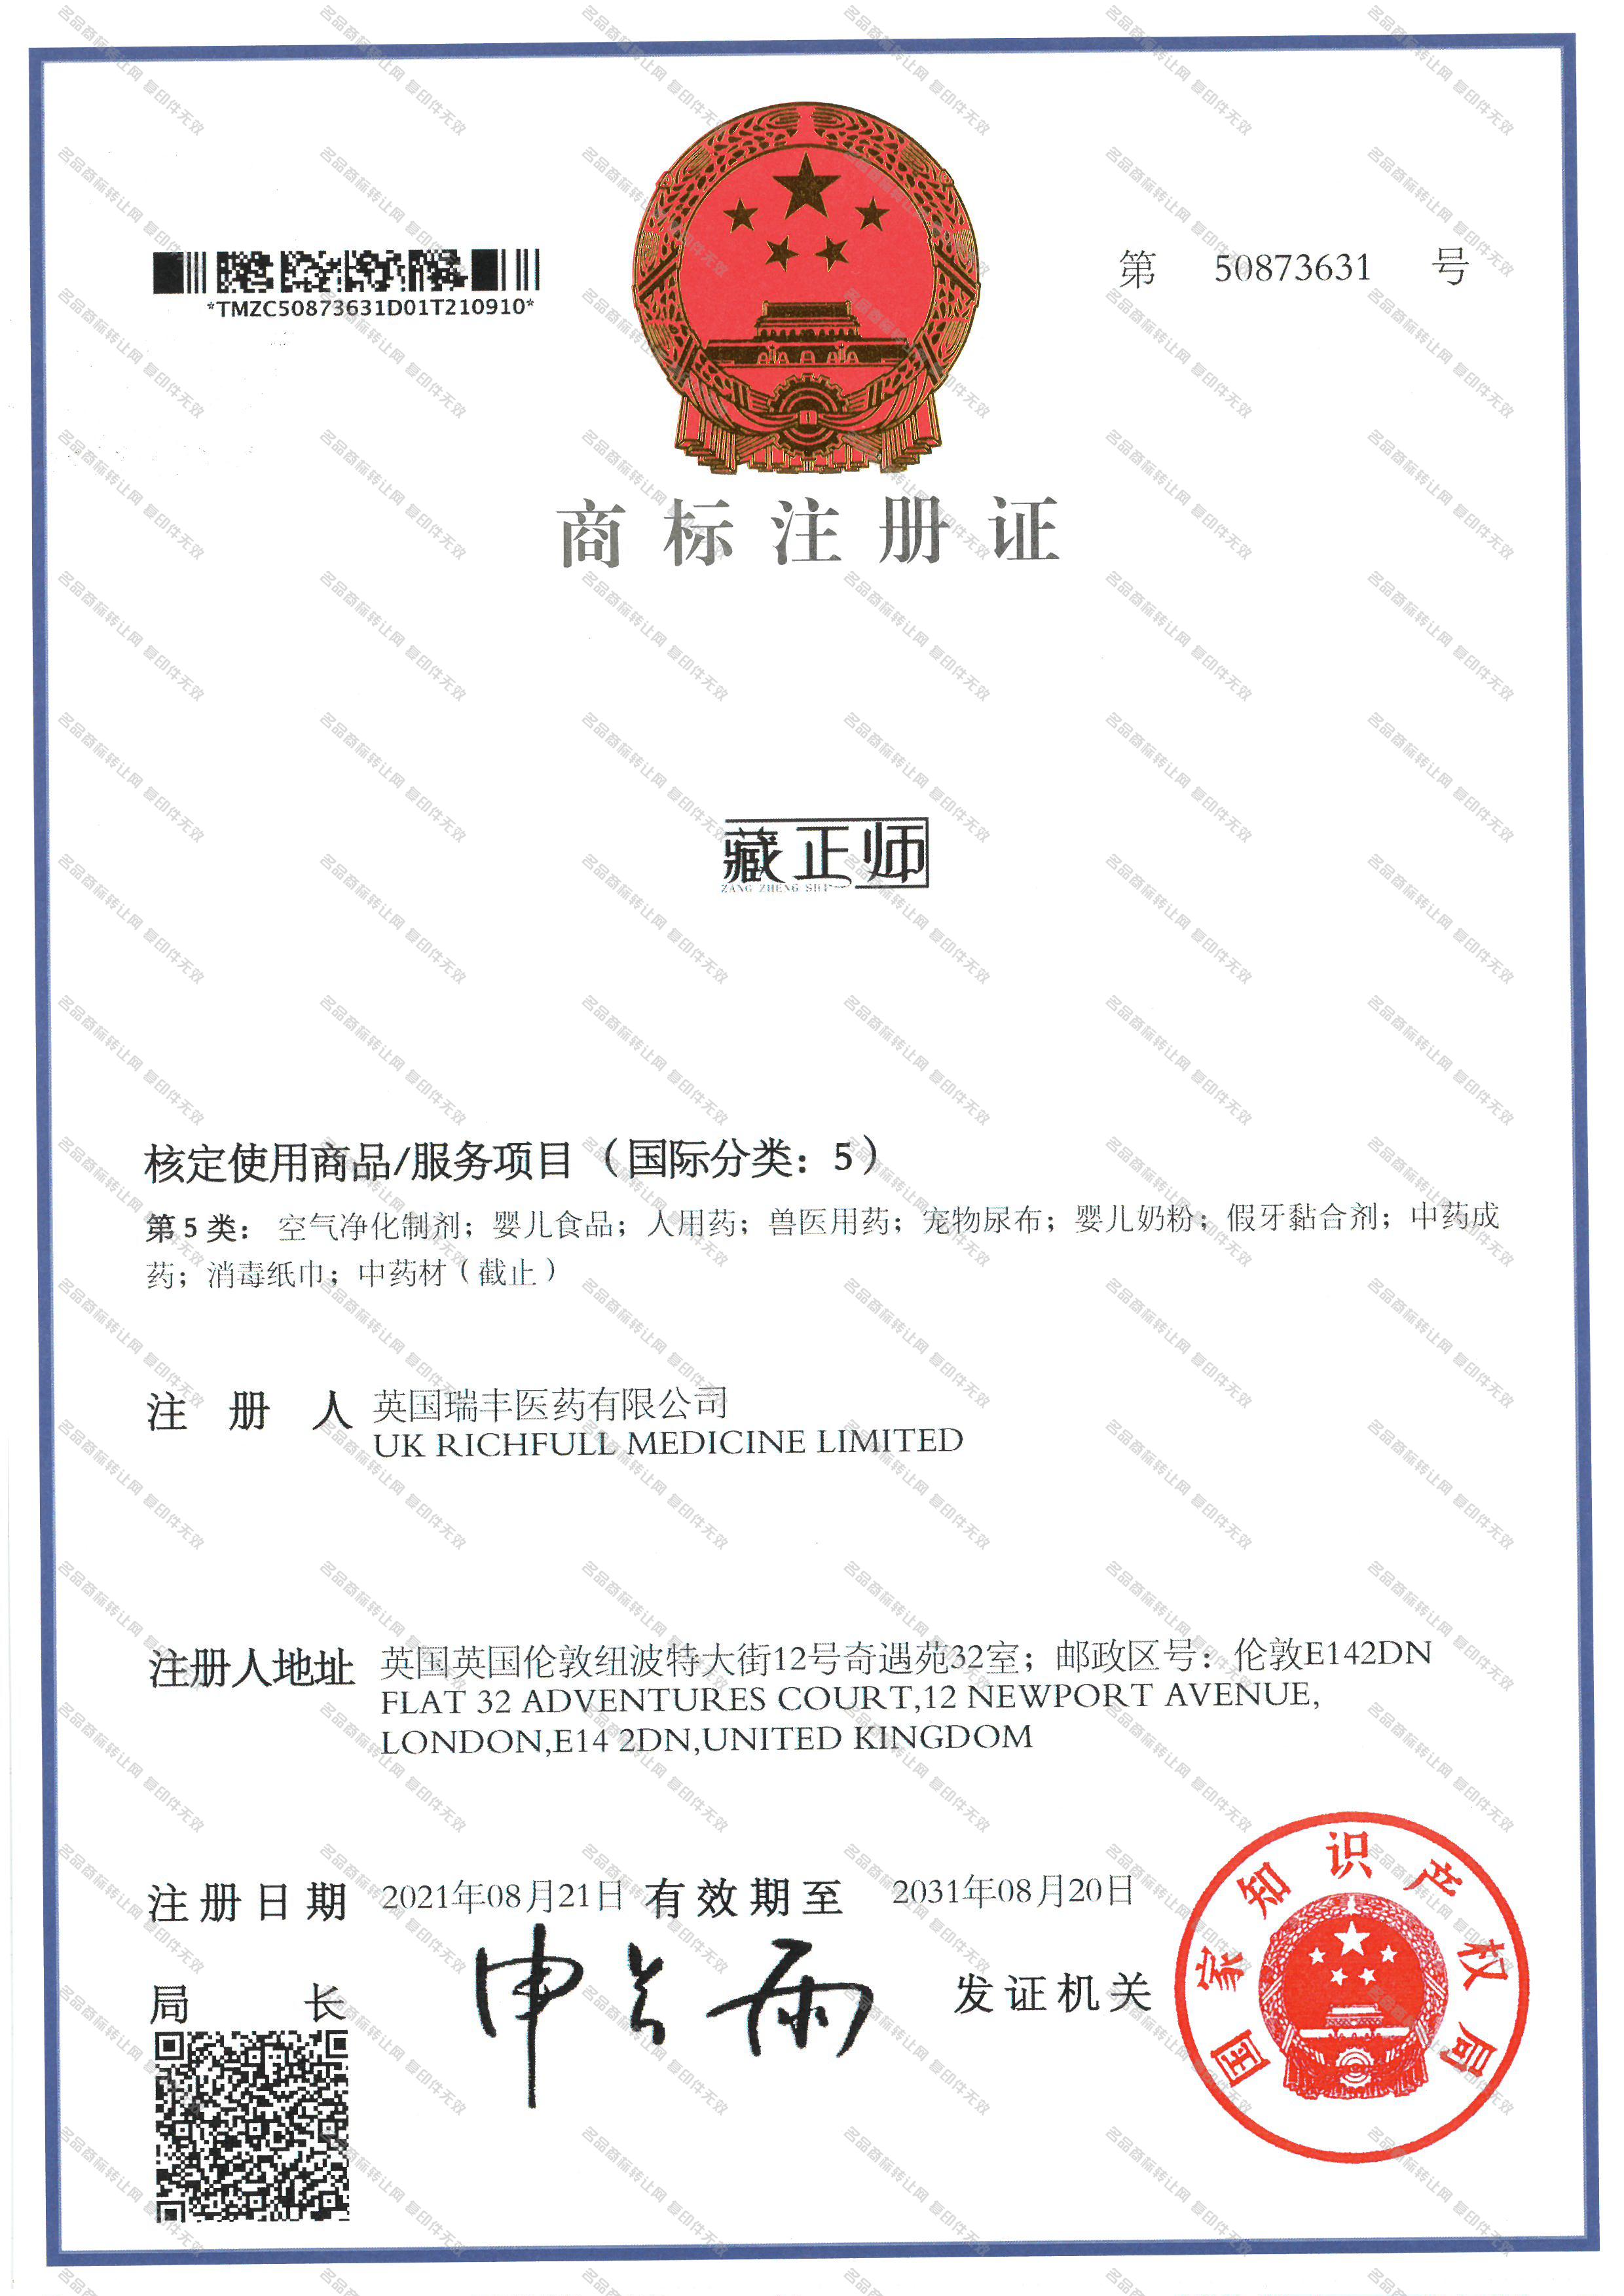 藏正师注册证